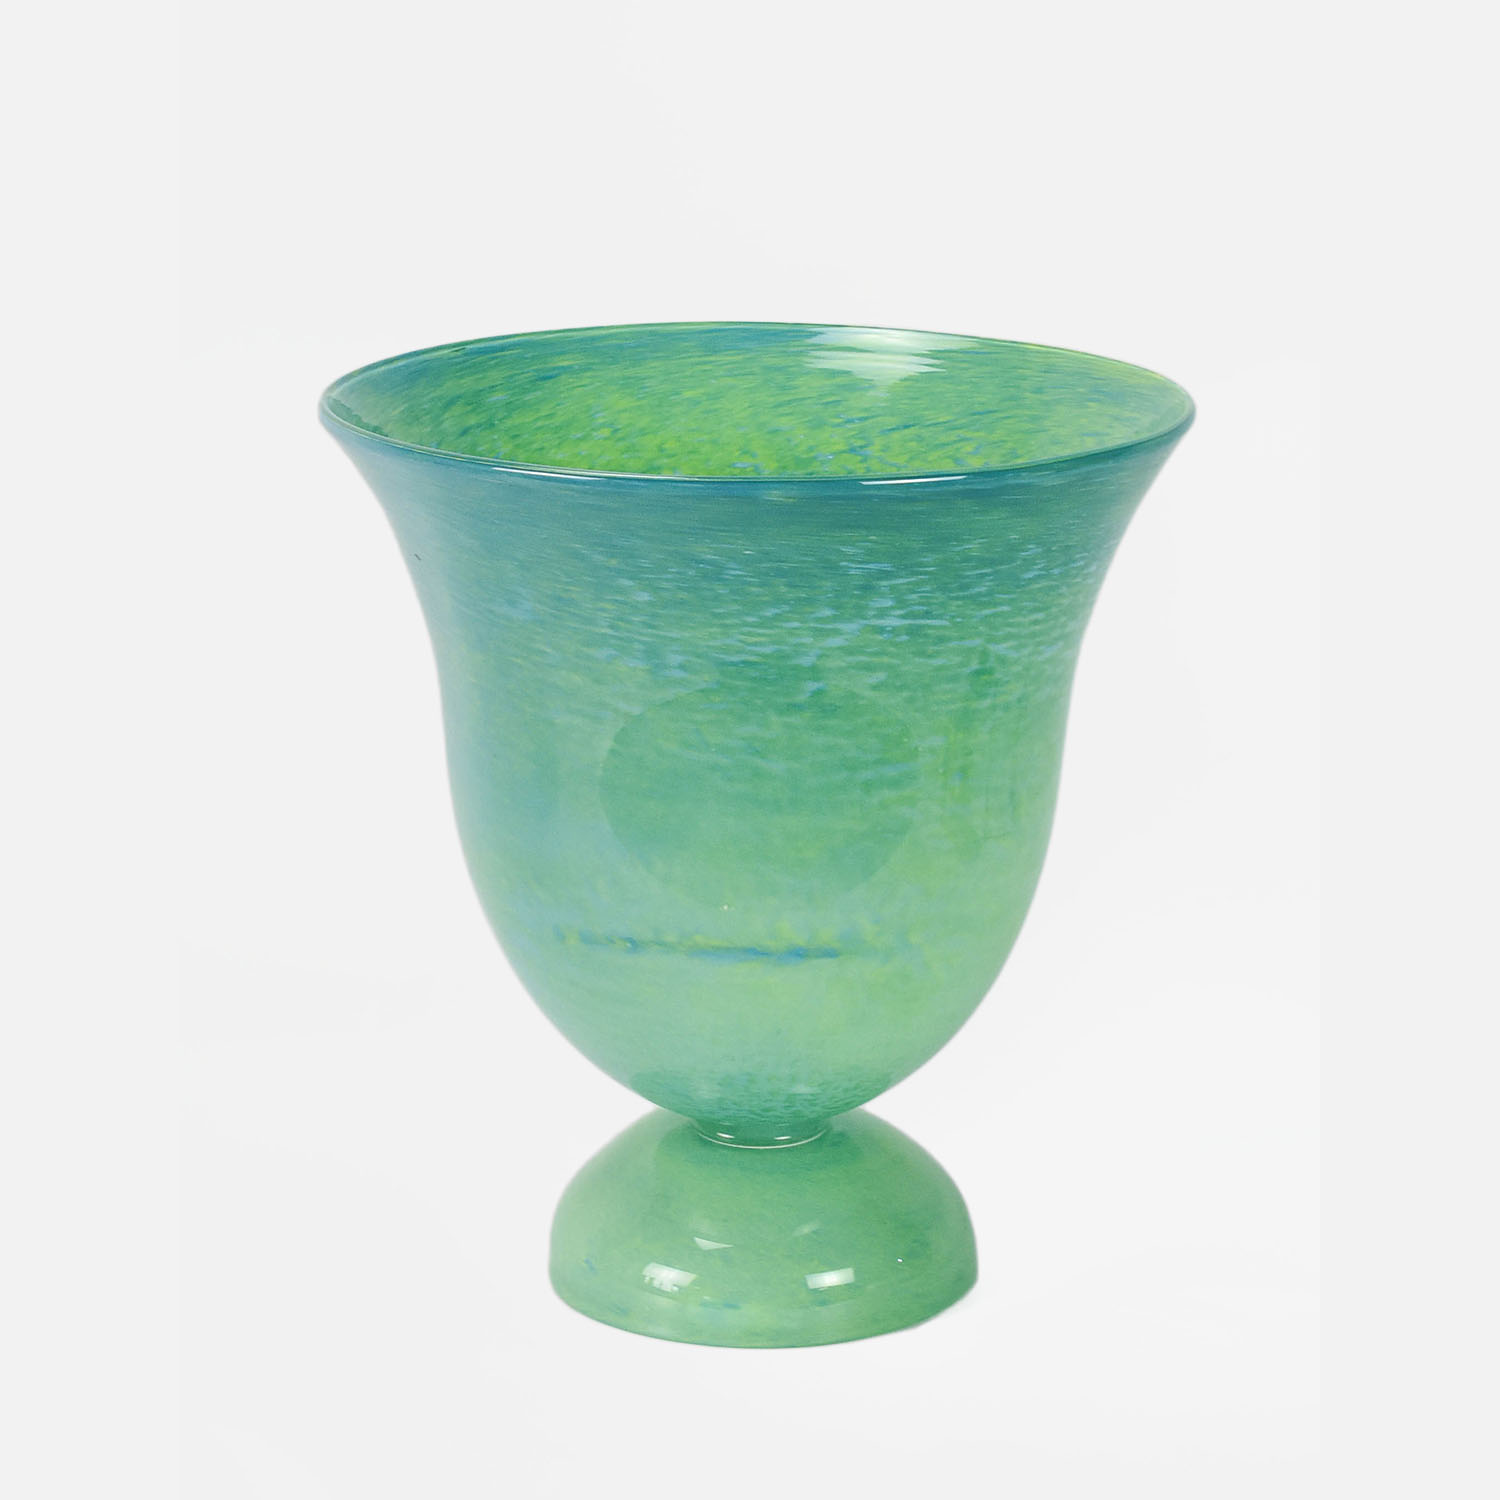 1930s Karl Wiedmann WMF Ikora Tall Teal Art Glass Vase